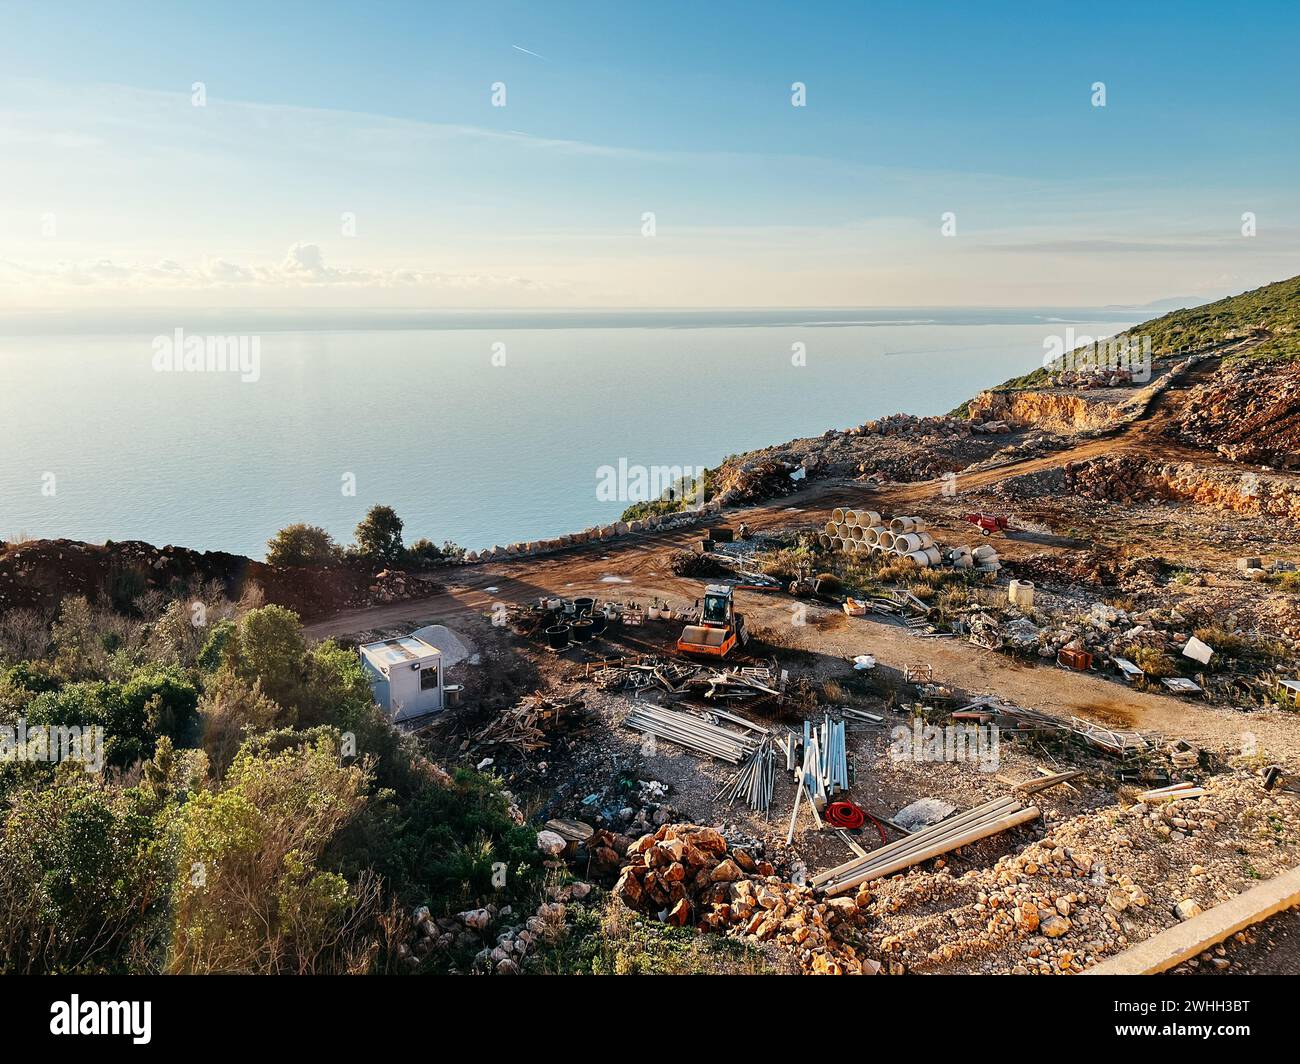 Il trattore si trova in un cantiere con materiali da costruzione su una collina vicino al mare Foto Stock